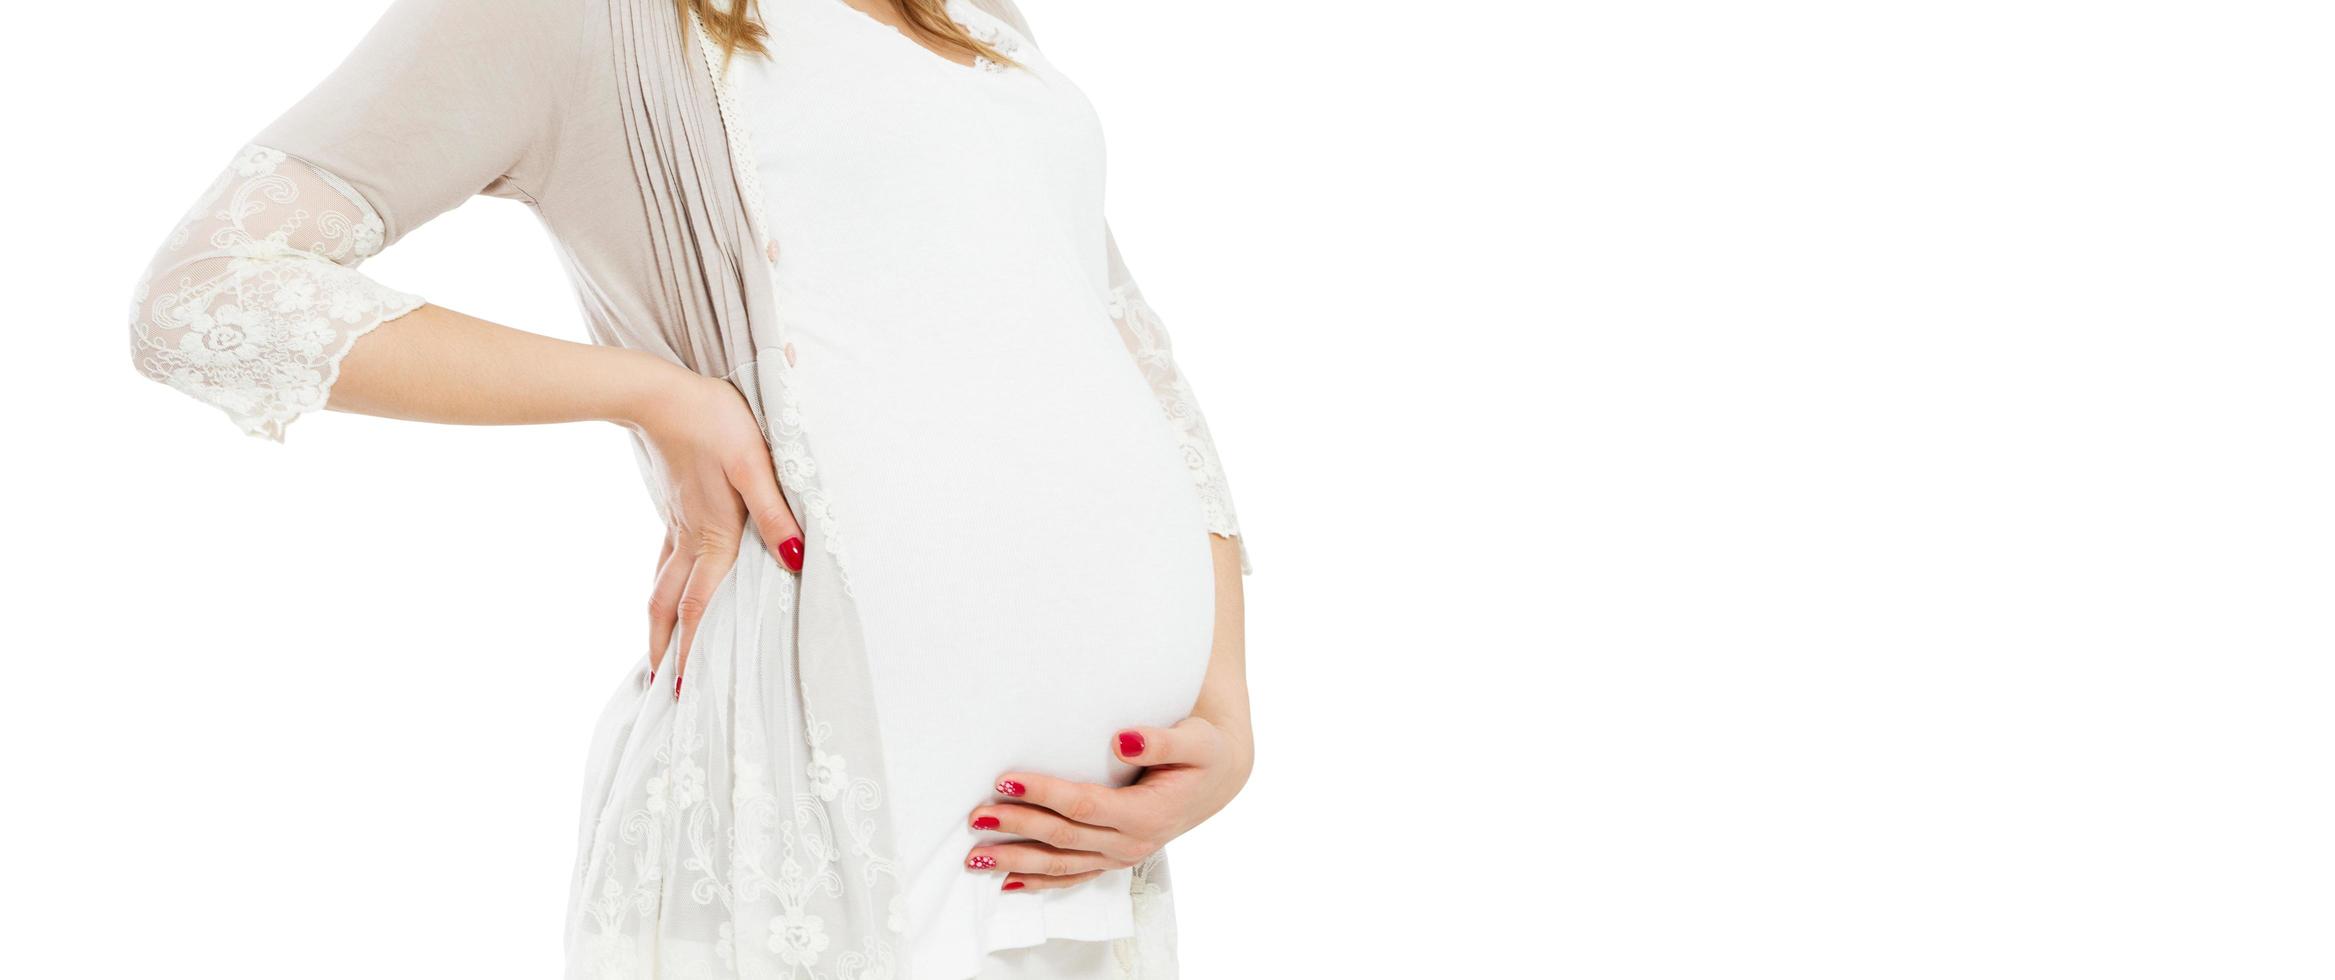 hübsche junge schwangere frau, die auf weißem hintergrund steht und den schwangeren bauch berührt - beschnittenes bild. foto